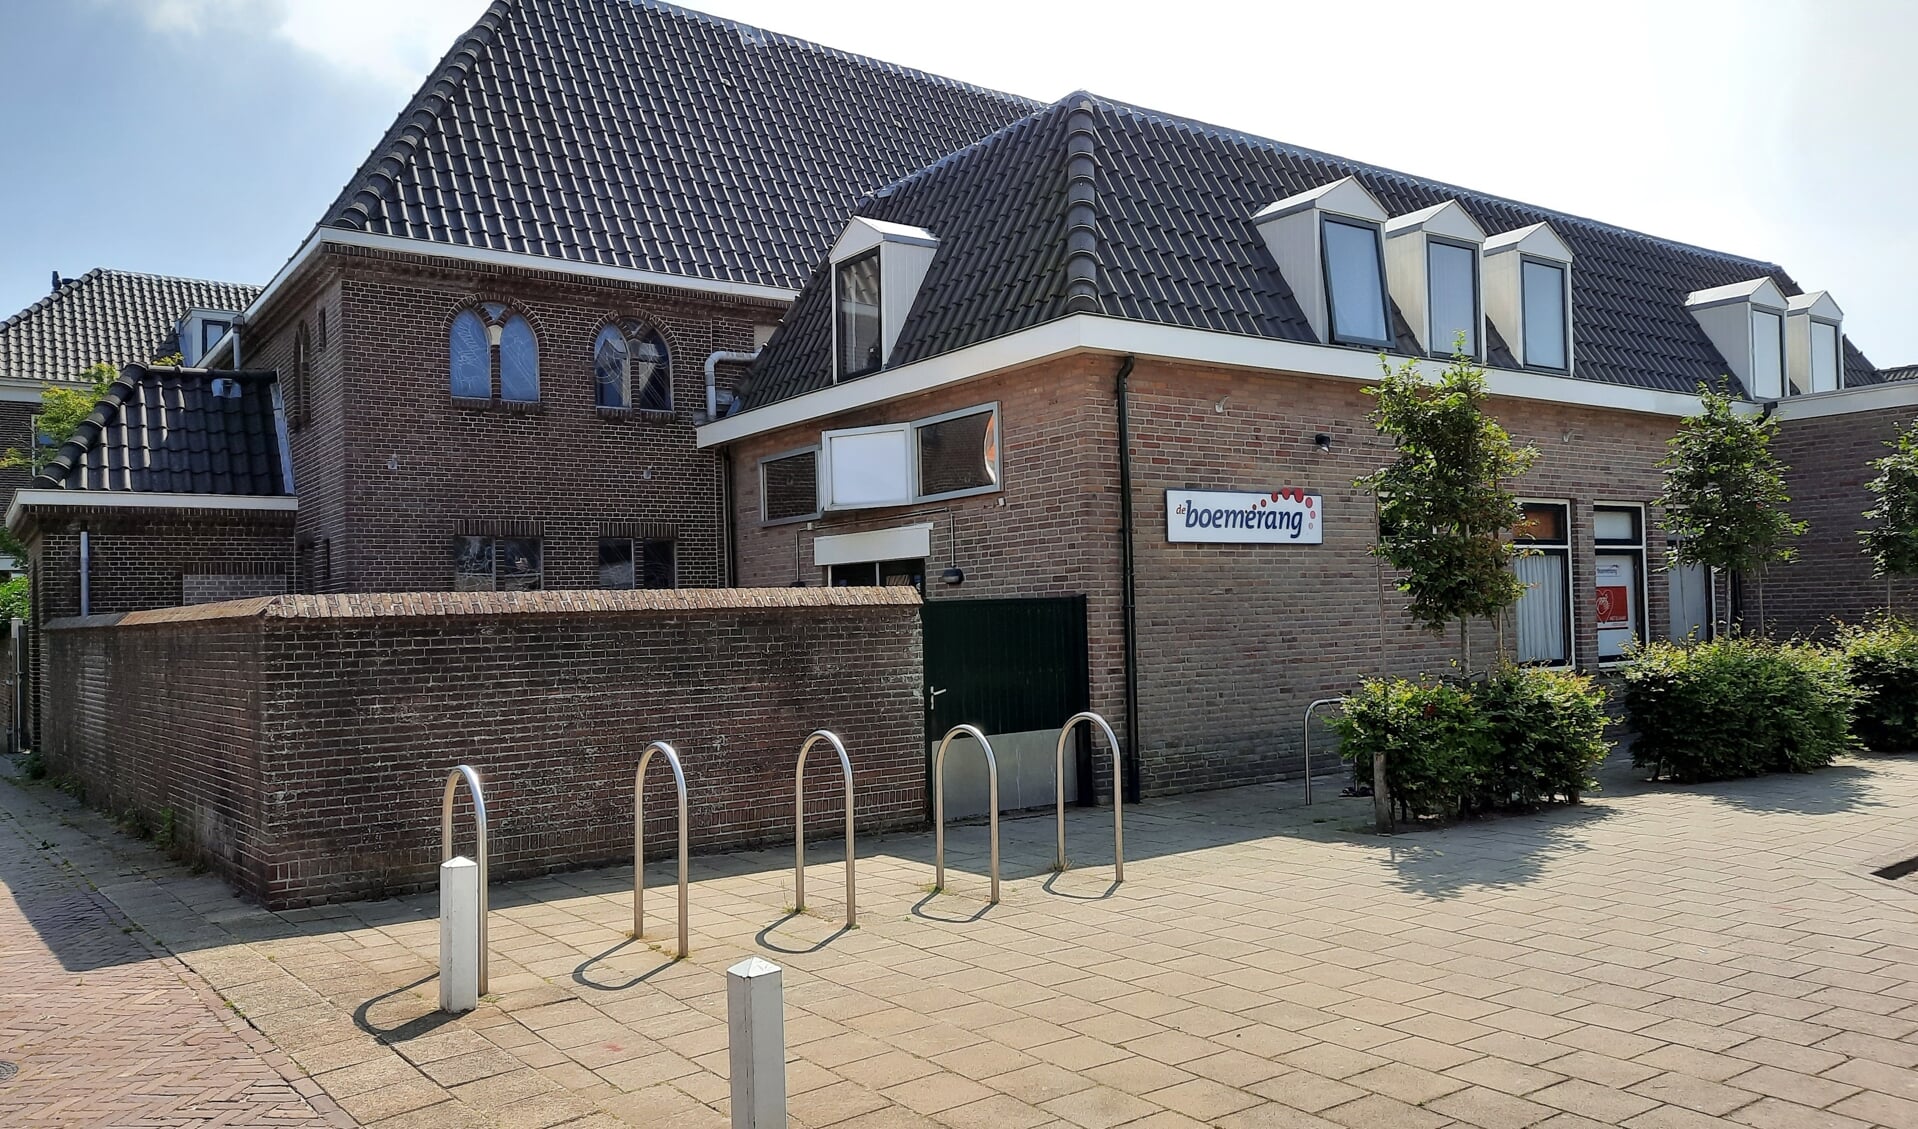 Sociëteit de Boemerang in de Huetingstraat in Katwijk aan den Rijn. | Foto: SKvD